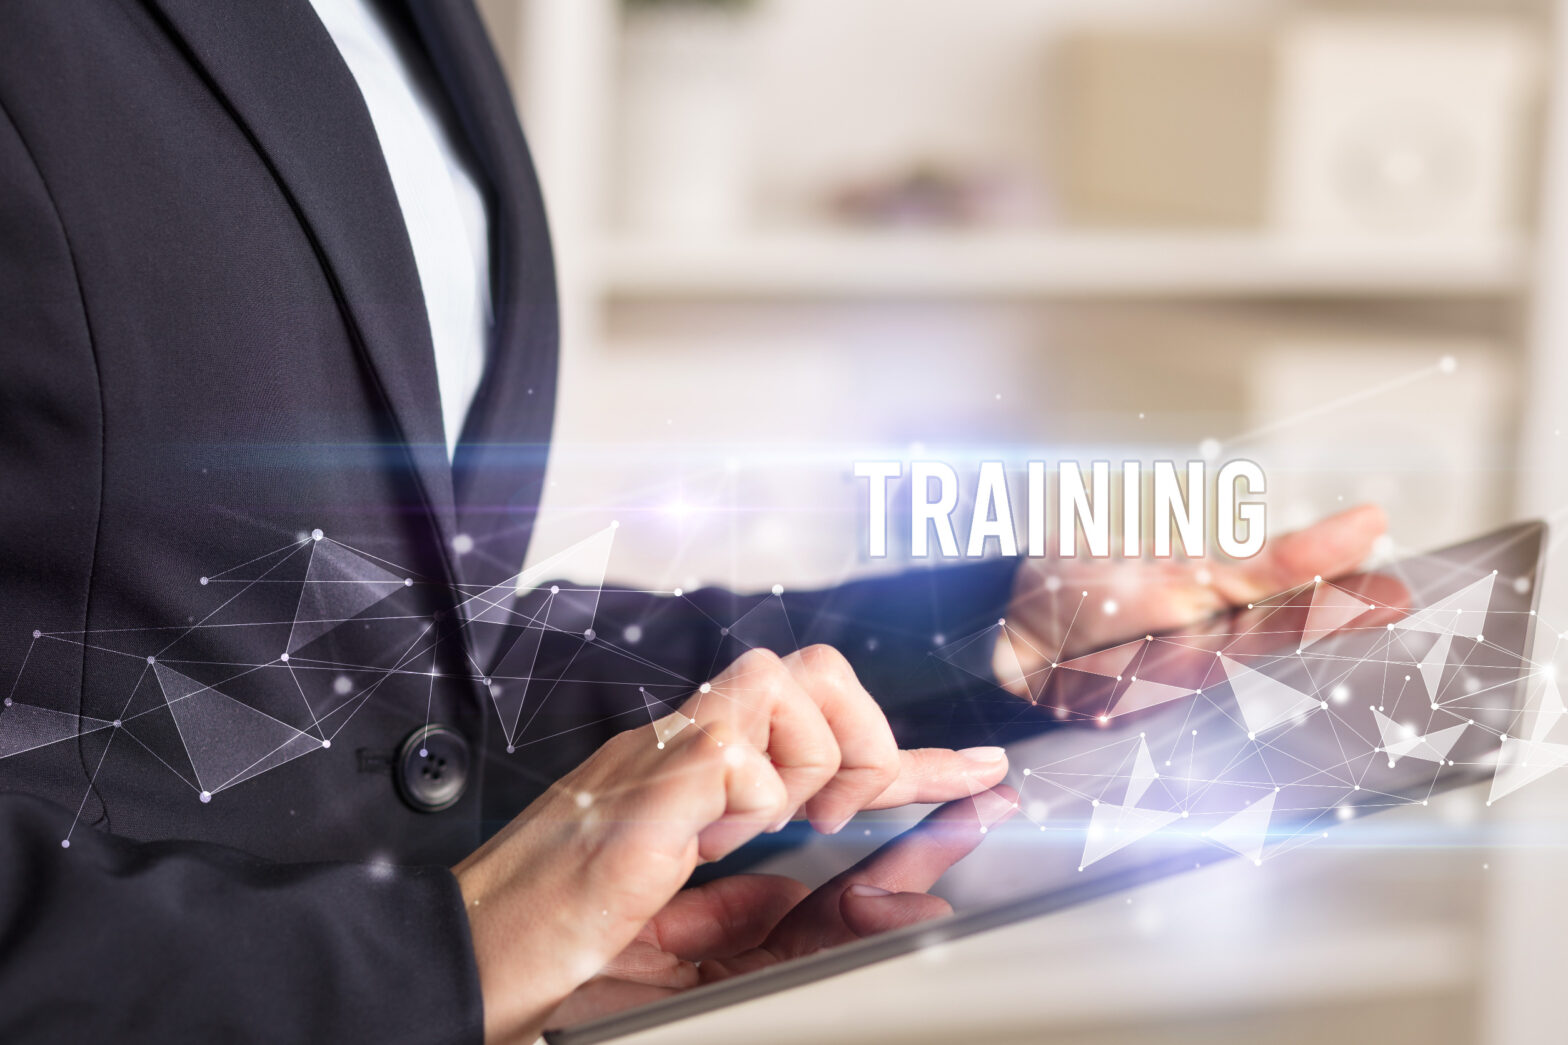 e-training business